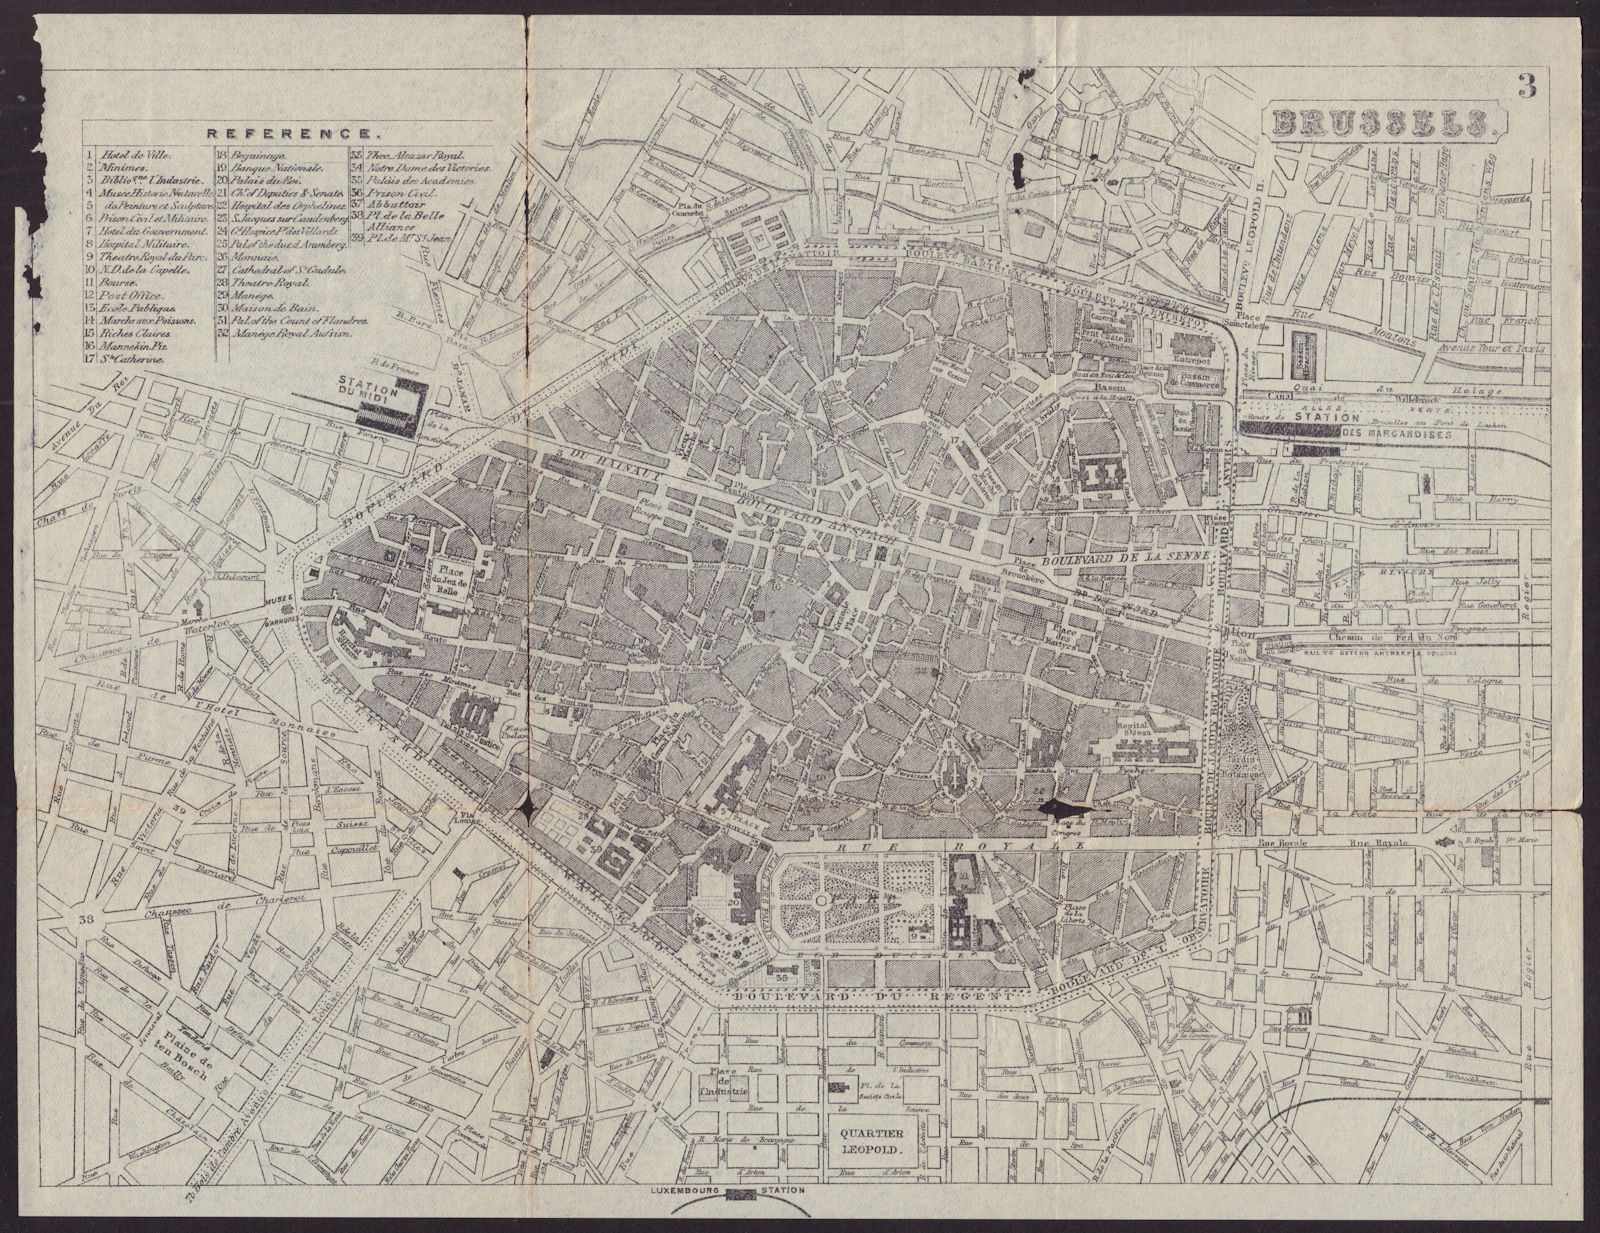 Associate Product BRUSSELS BRUSSEL BRUXELLES antique town plan city map. Belgium. BRADSHAW c1899